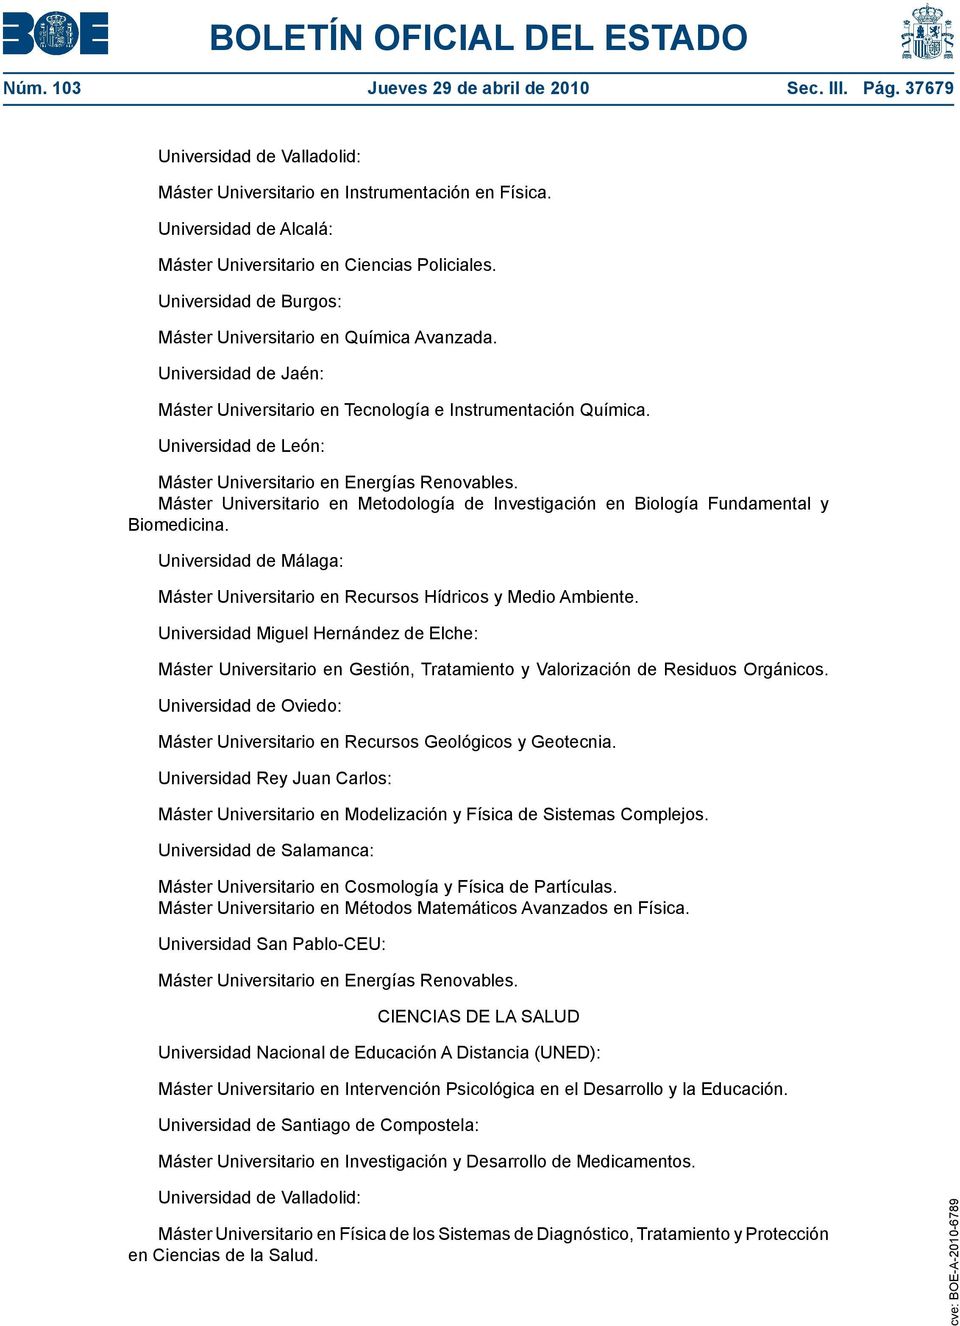 Máster Universitario en Metodología de Investigación en Biología Fundamental y Biomedicina. Universidad de Málaga: Máster Universitario en Recursos Hídricos y Medio Ambiente.